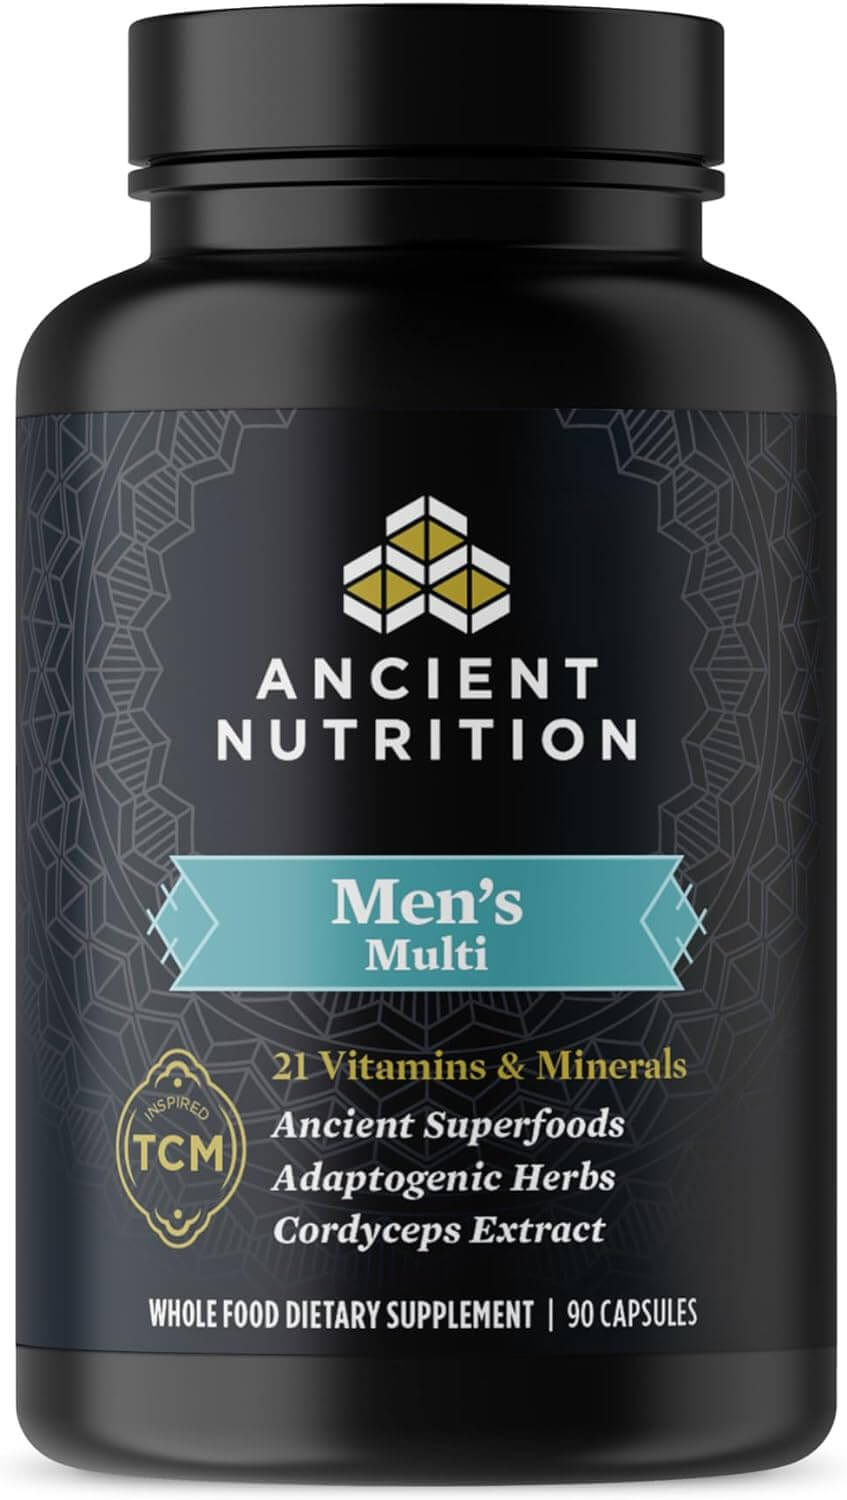 Мультивитамины для мужчин Ancient Nutrition Supports Healthy Immune System and Bone Health, 90 капсул бады тонизирующие и общеукрепляющие mychoice nutrition добавка мультивитамин дейли